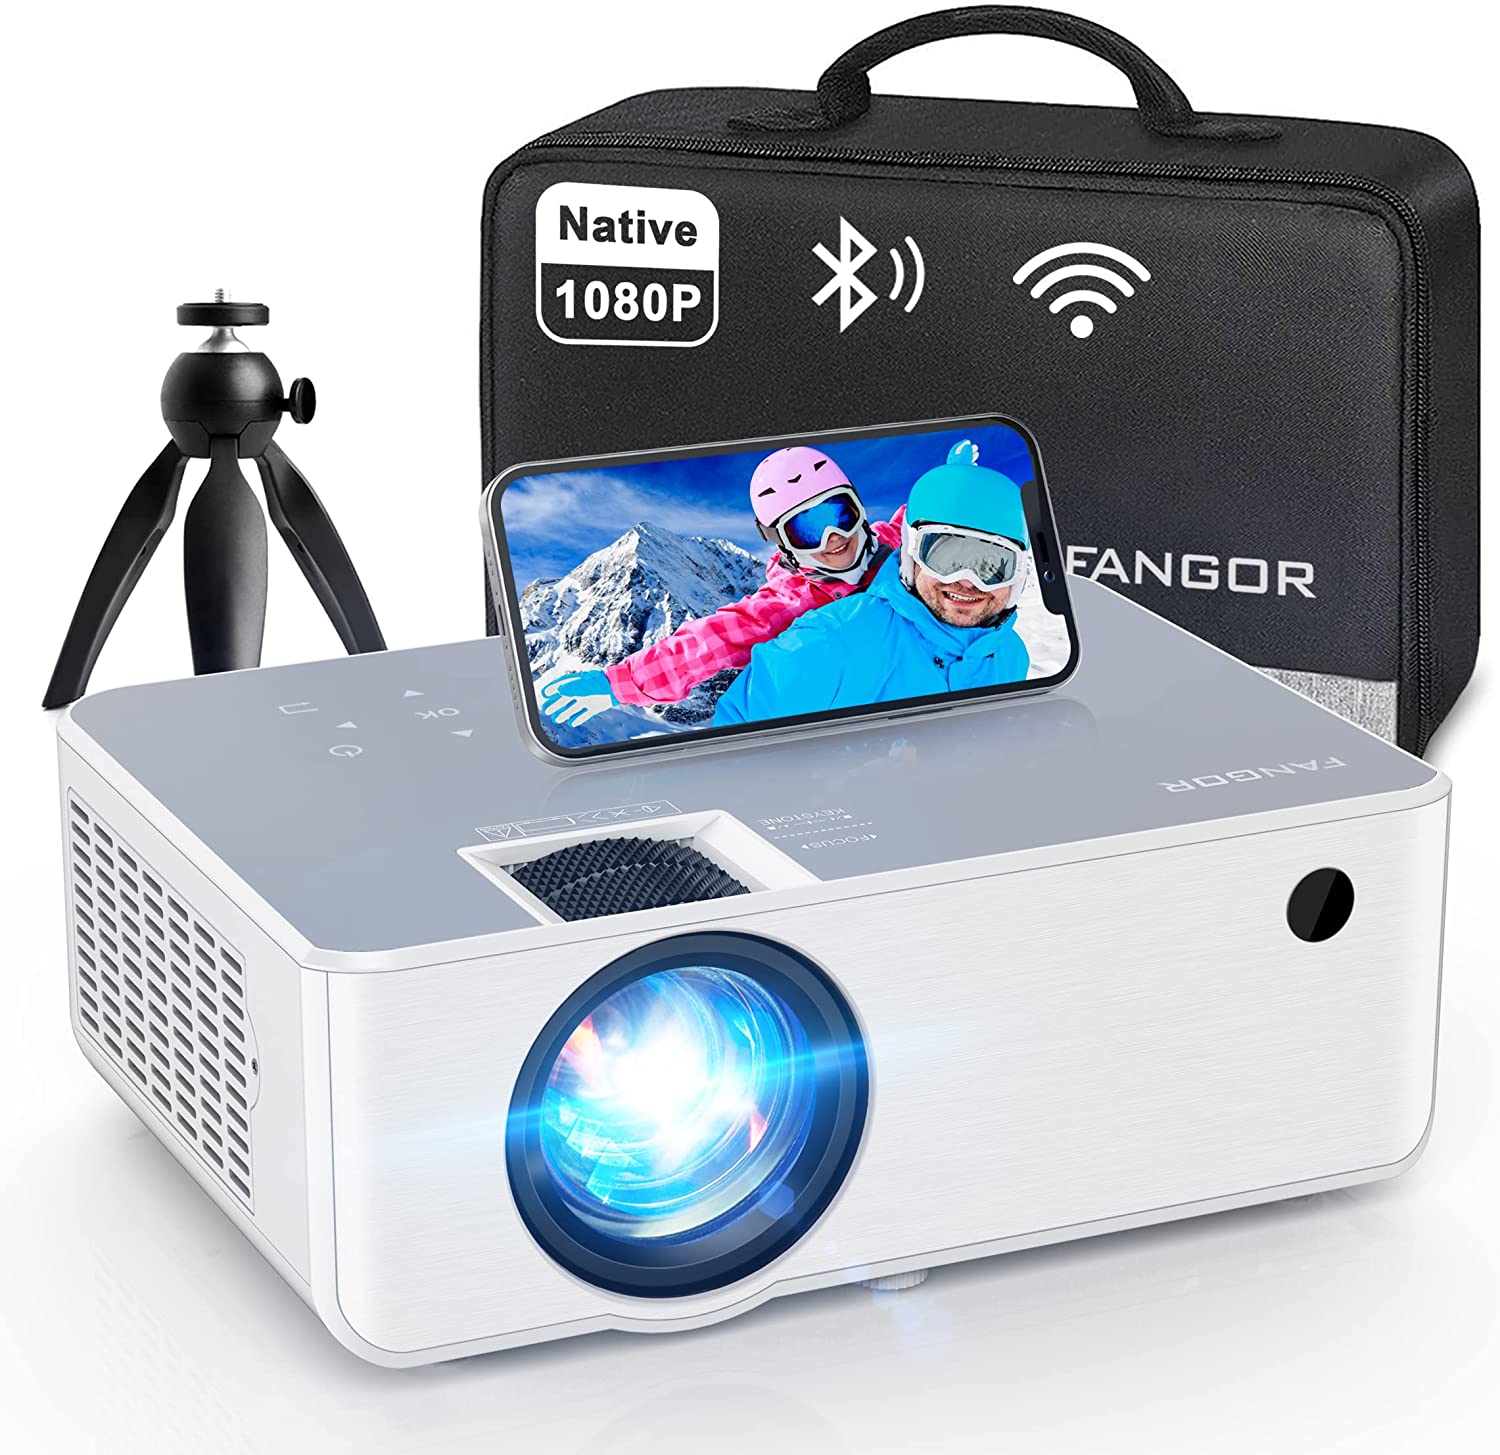 FANGOR 1080P HD Projector